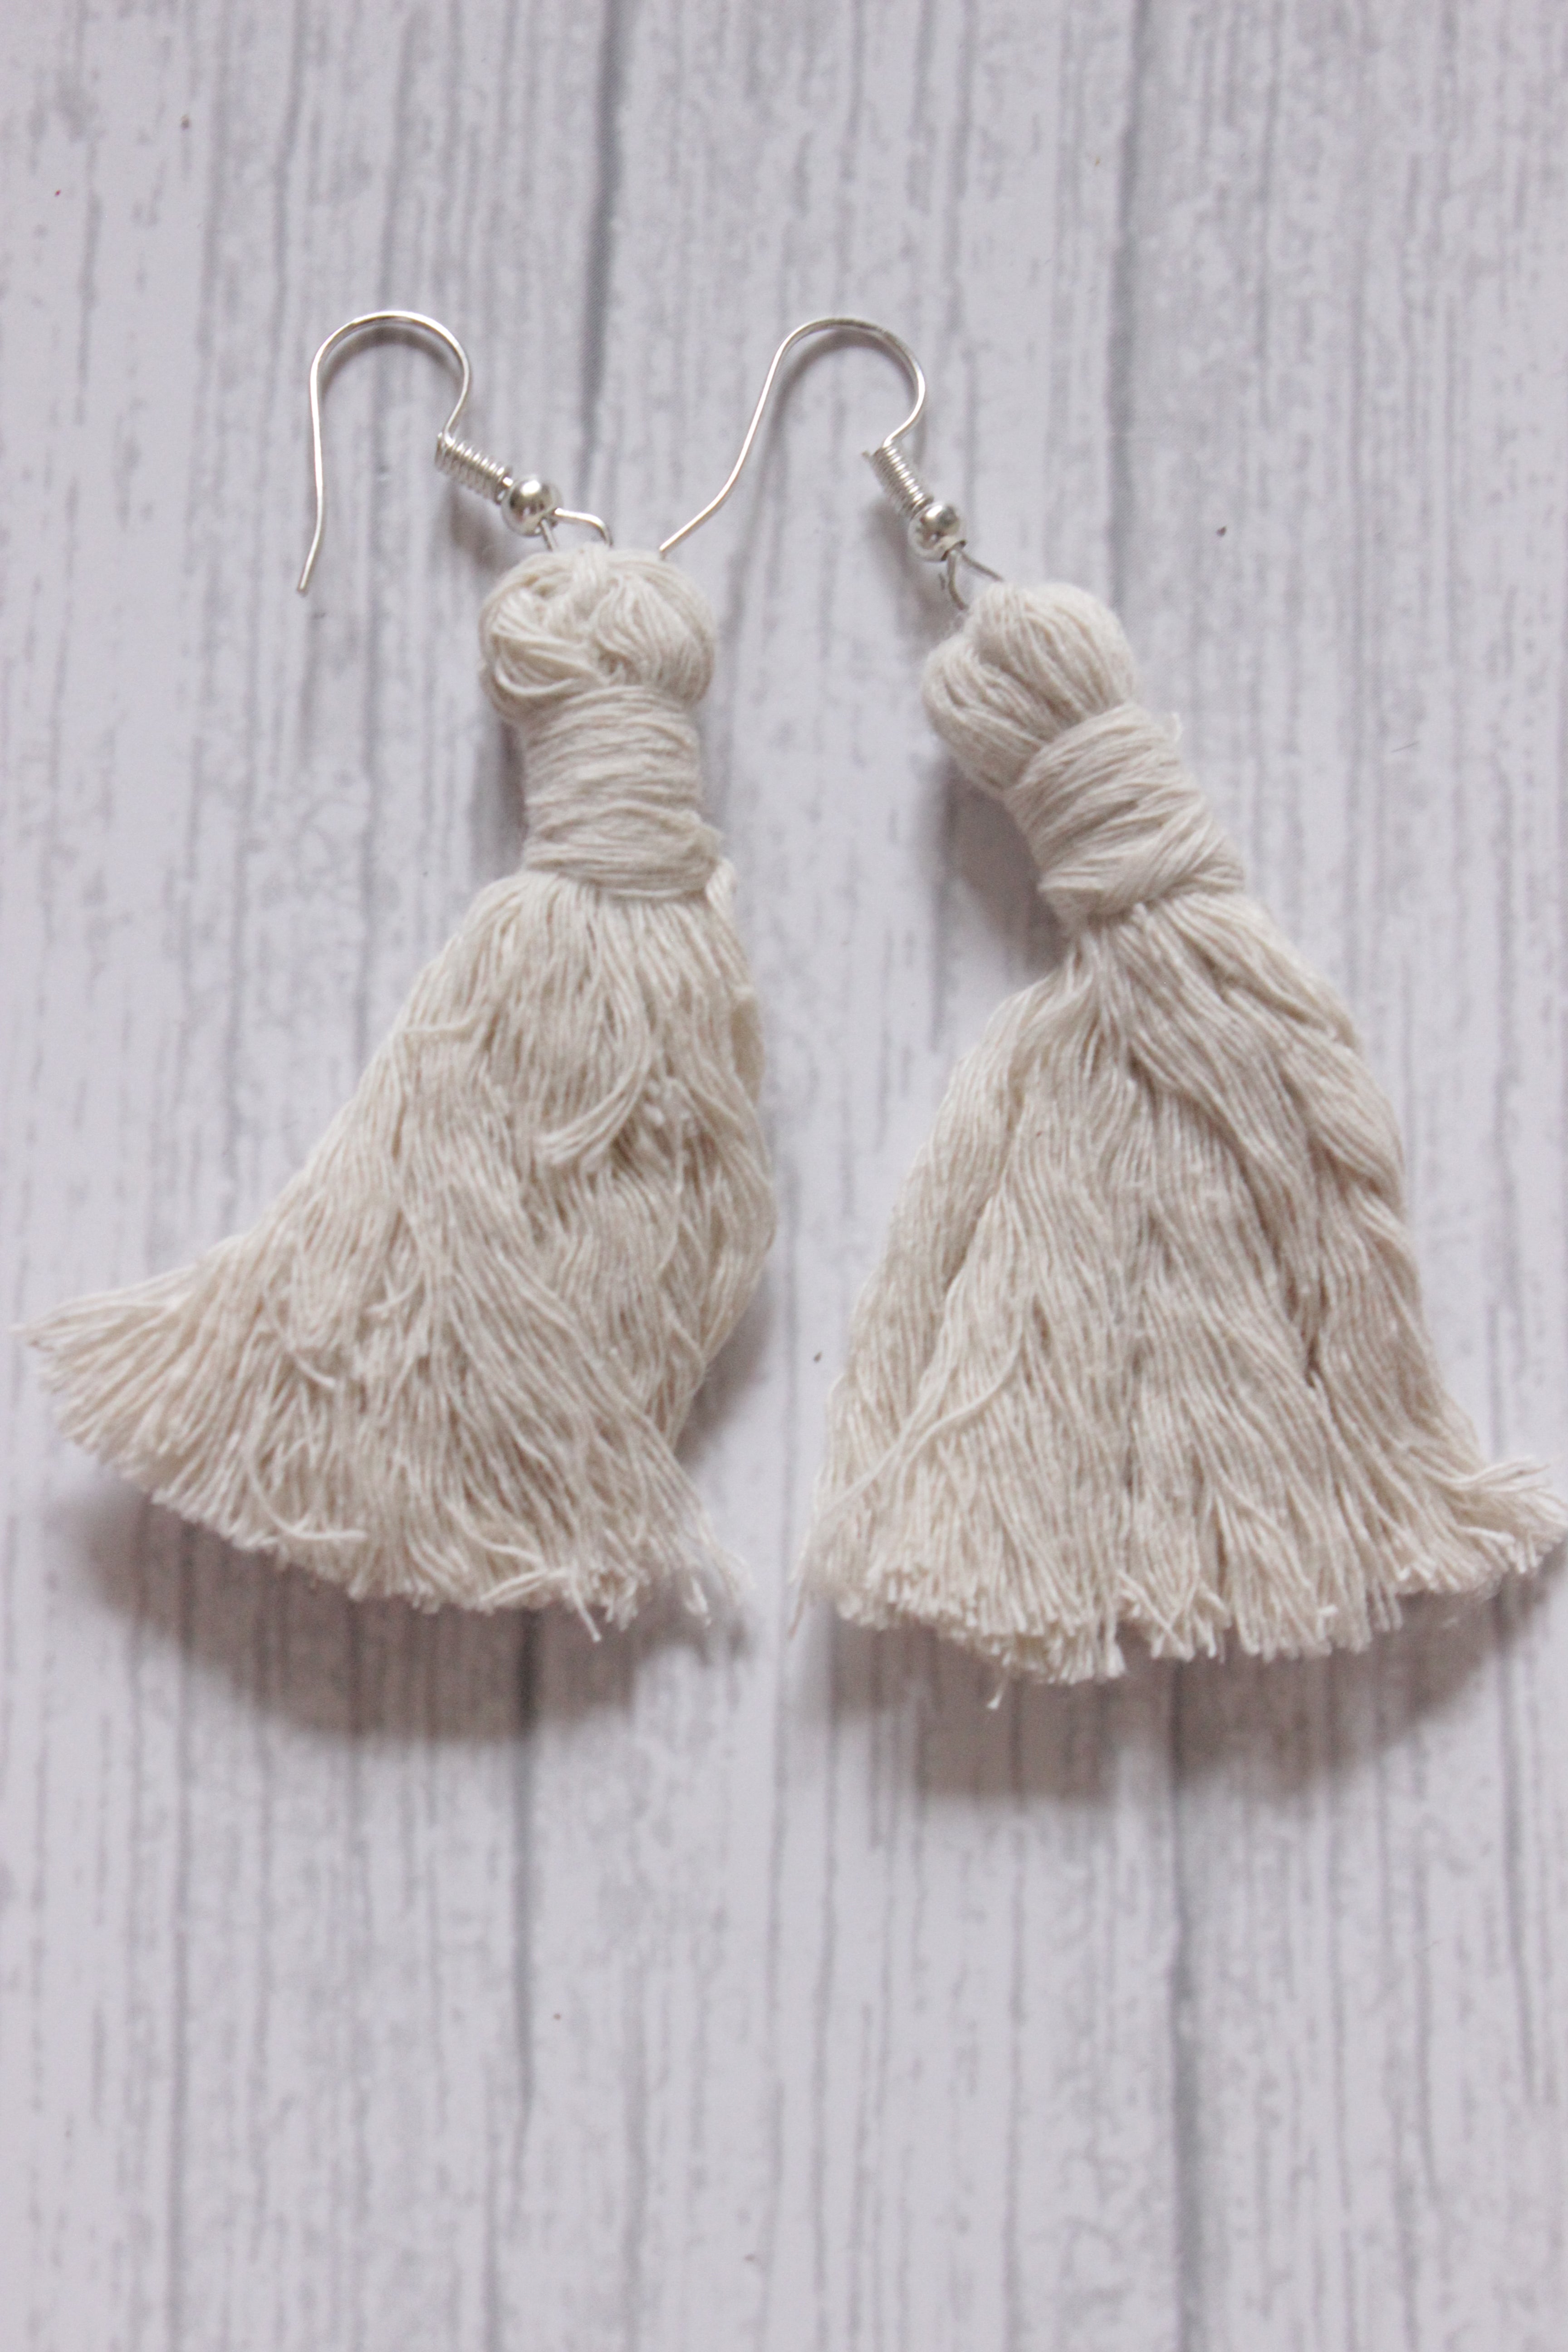 Handcrafted White Macrame Threads Dangler Earrings